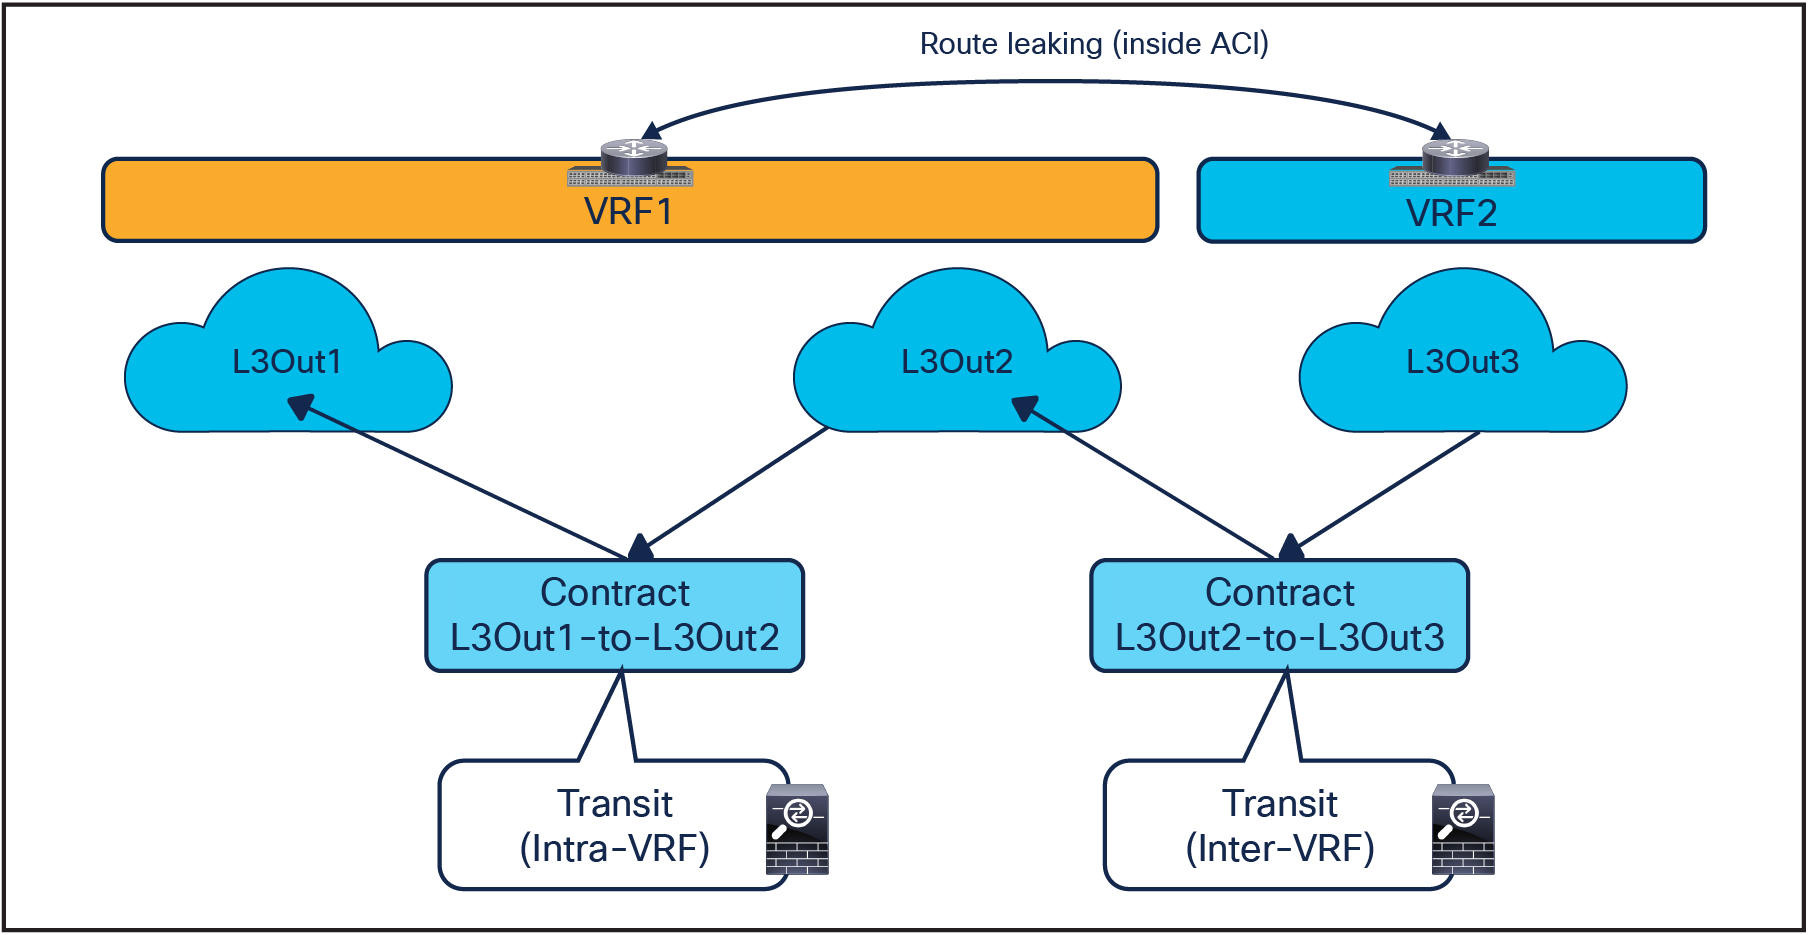 Transit service nodes (intra-VRF and inter-VRF)